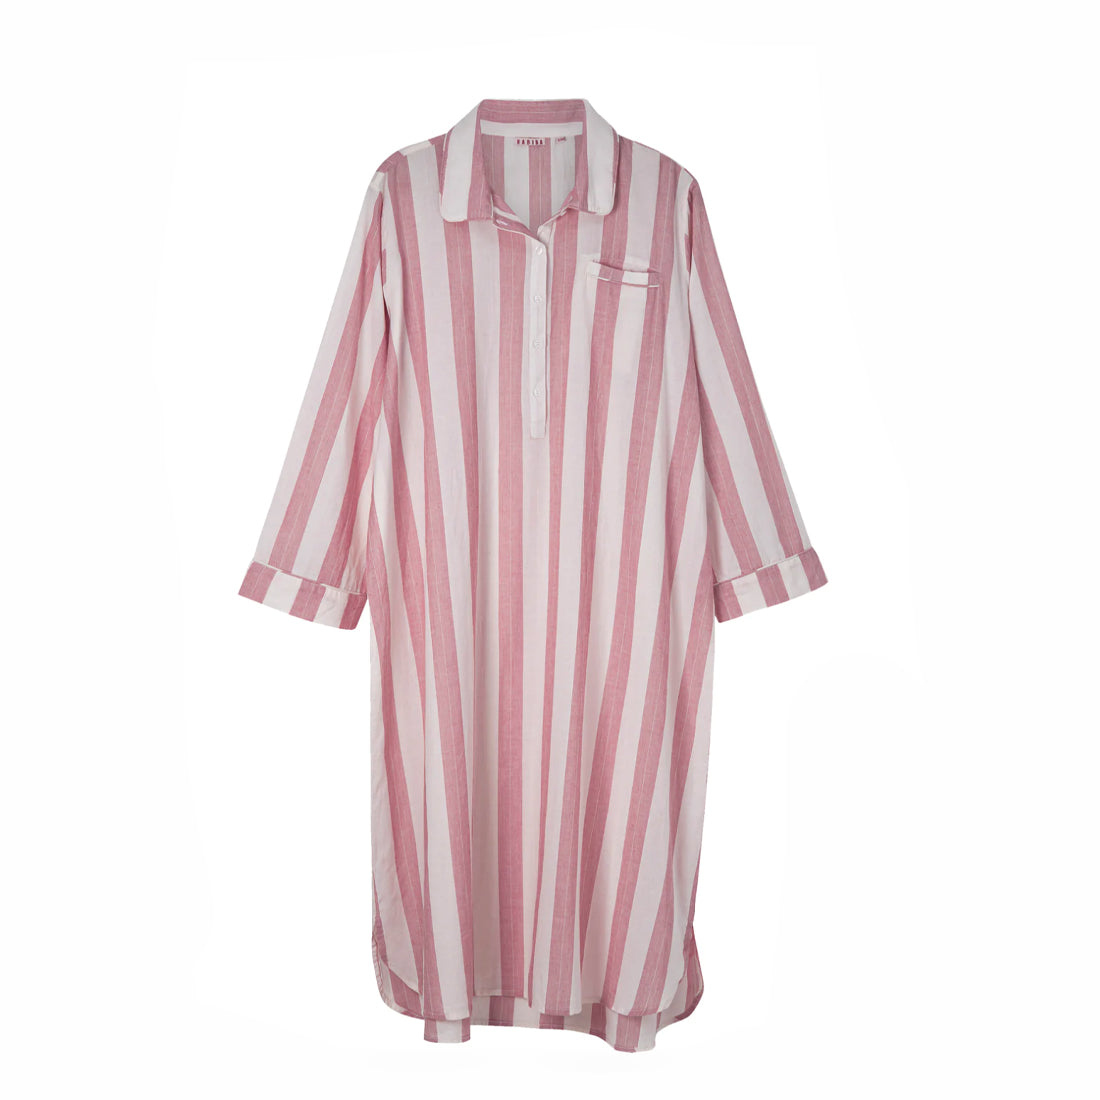 Lang skjorte med hvite og lys rosa striper.